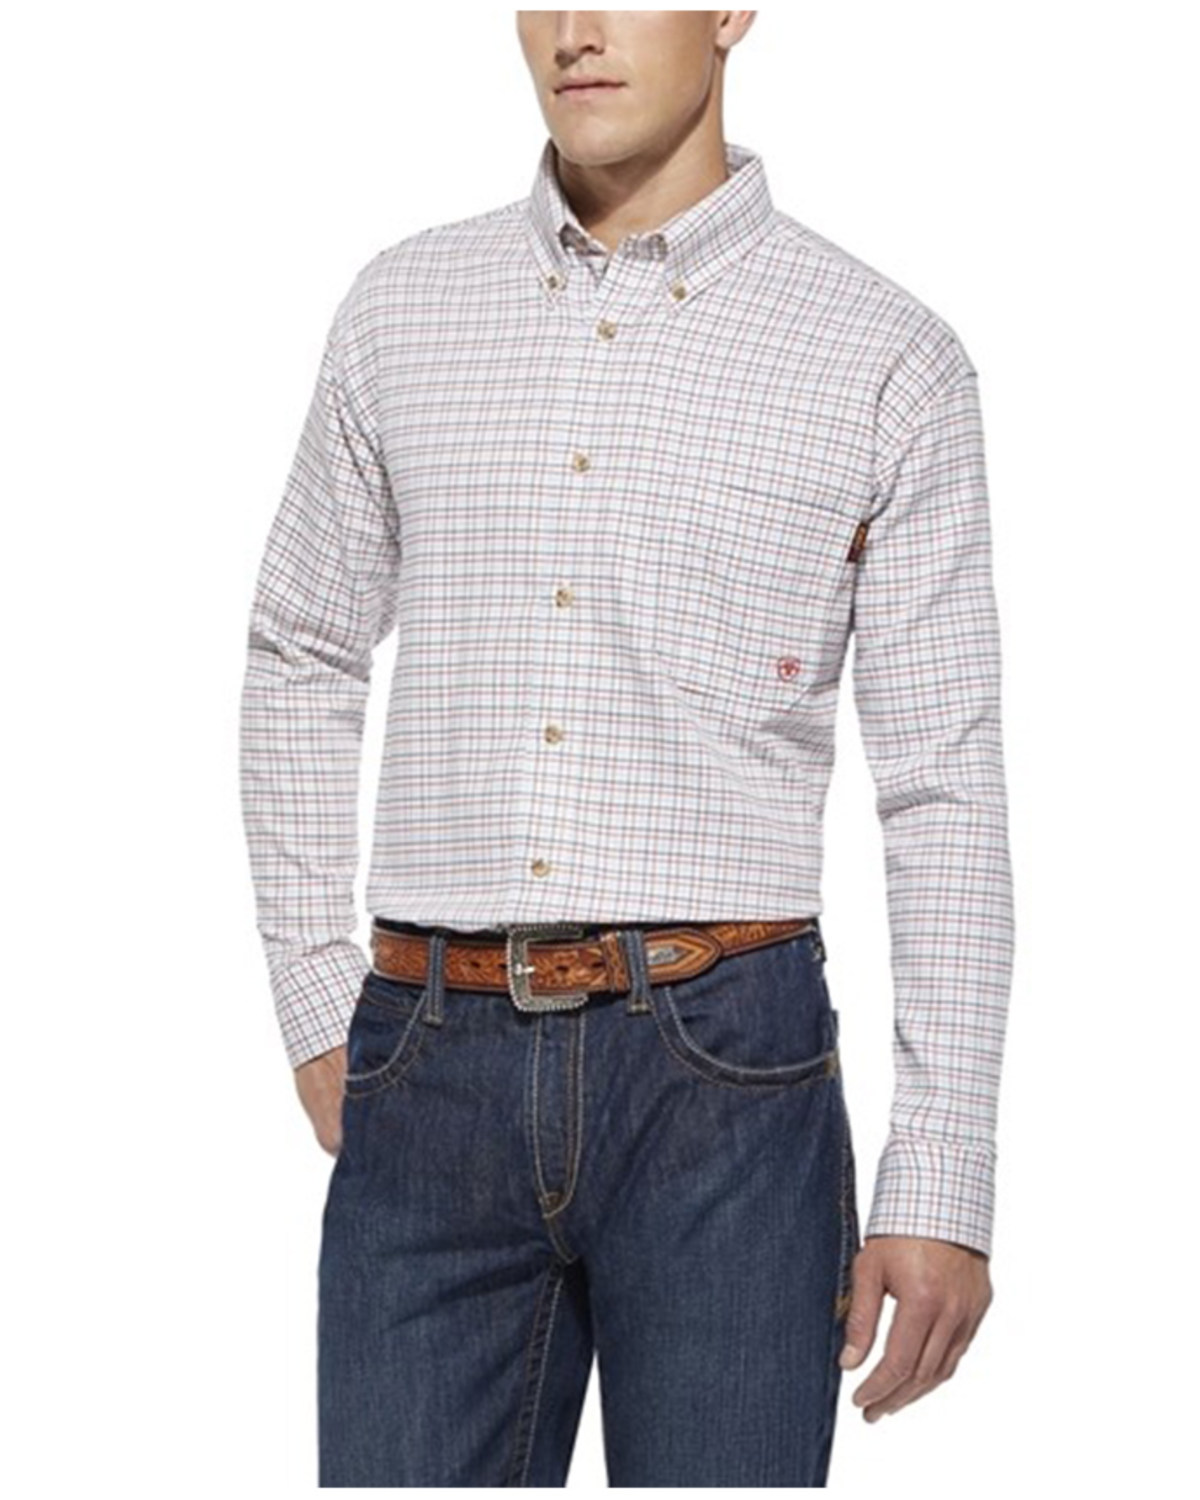 Ariat Men's FR Gauge Plaid Print Long Sleeve Button Down Work Shirt